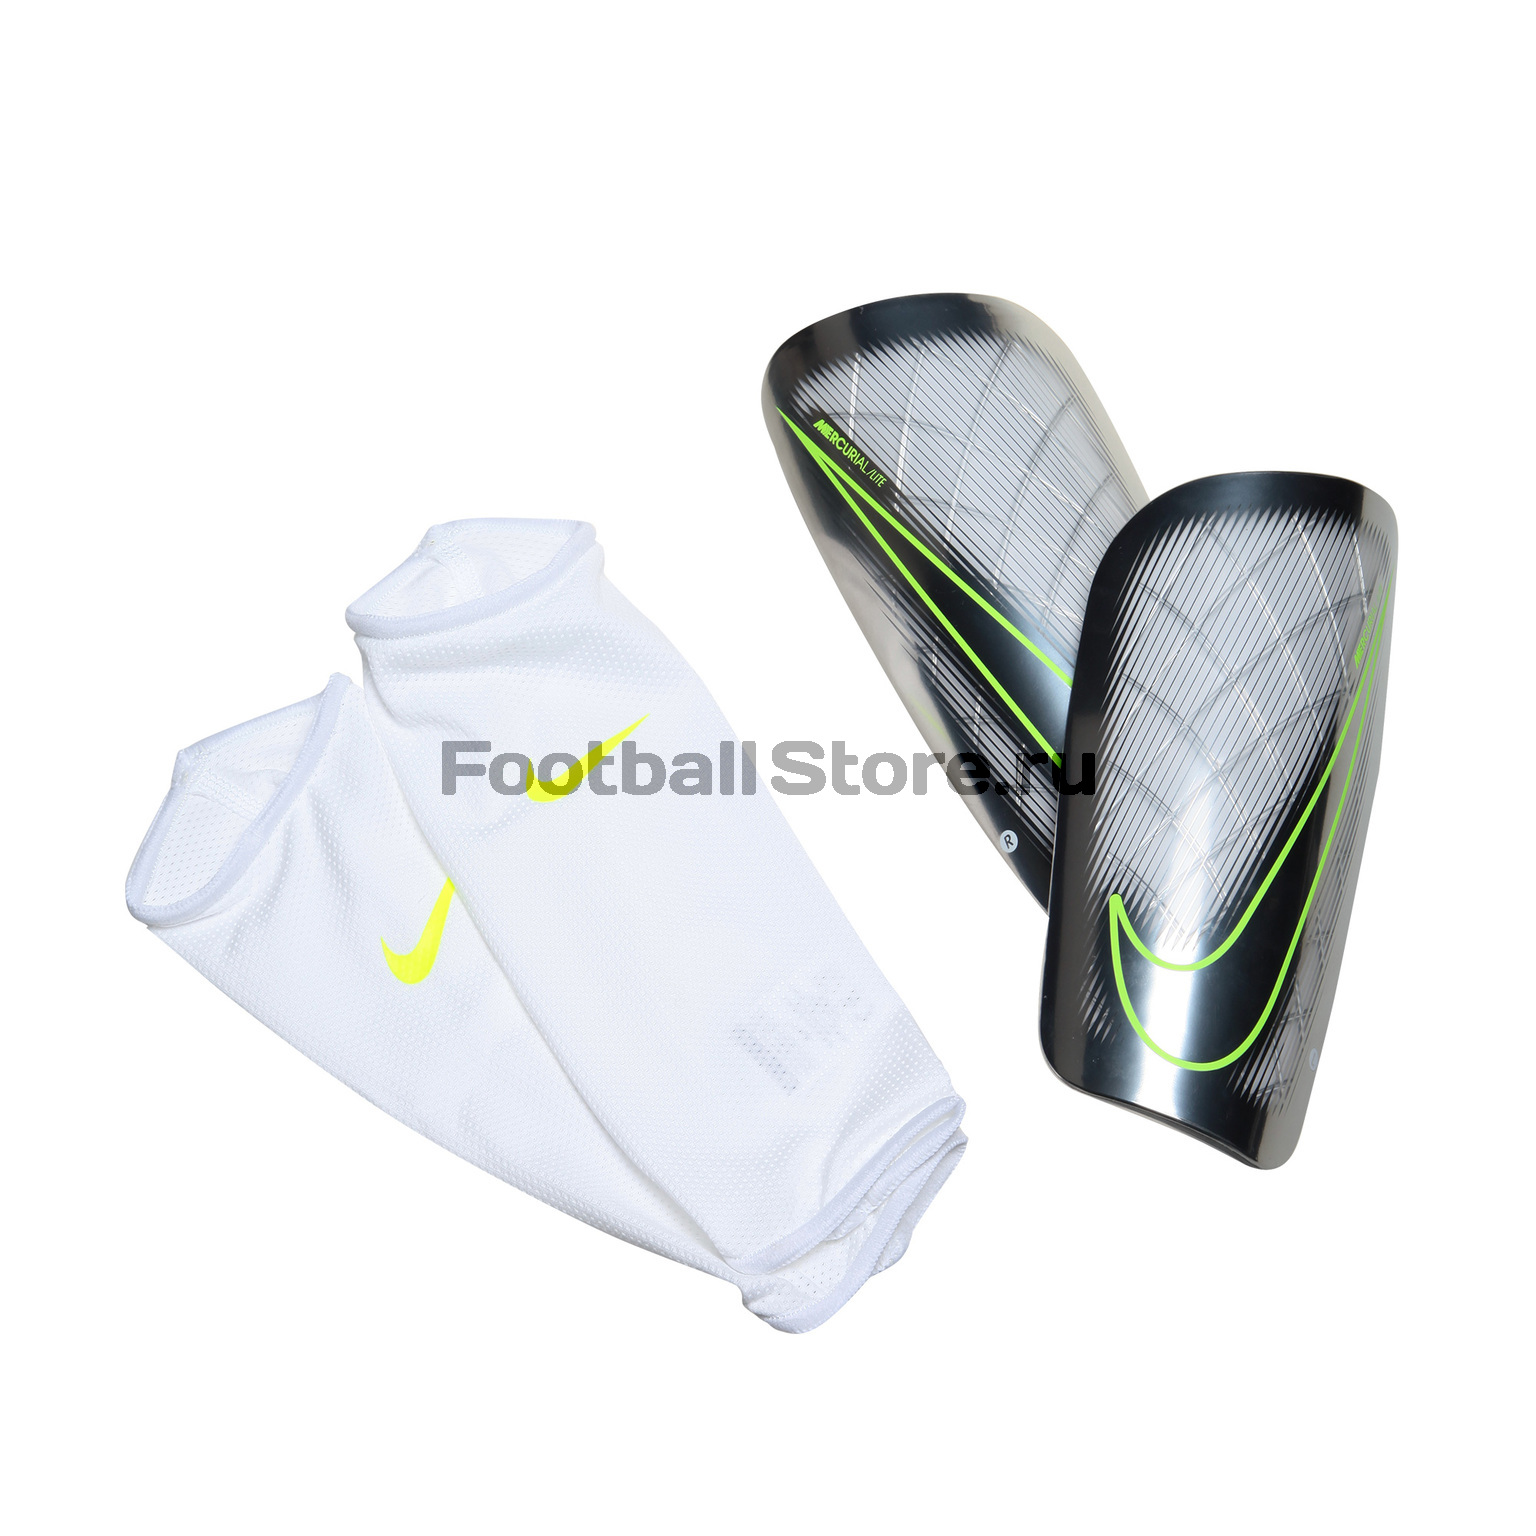 Щитки футбольные Nike Mercurial Lite SP2086-104